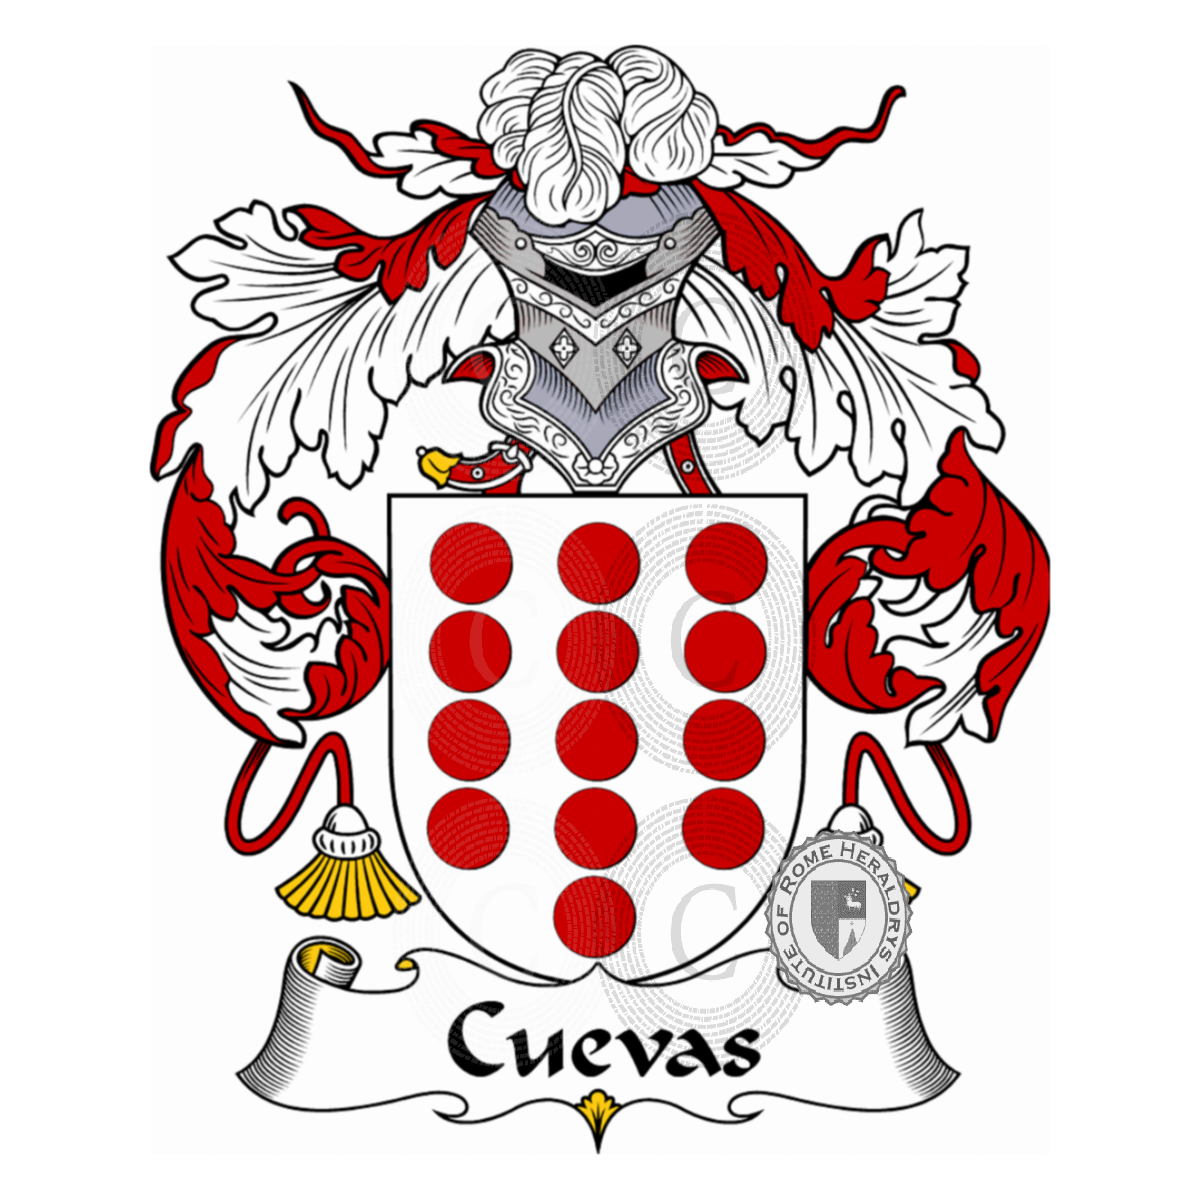 Wappen der FamilieCuevas, Cuevaz,de Cuevas